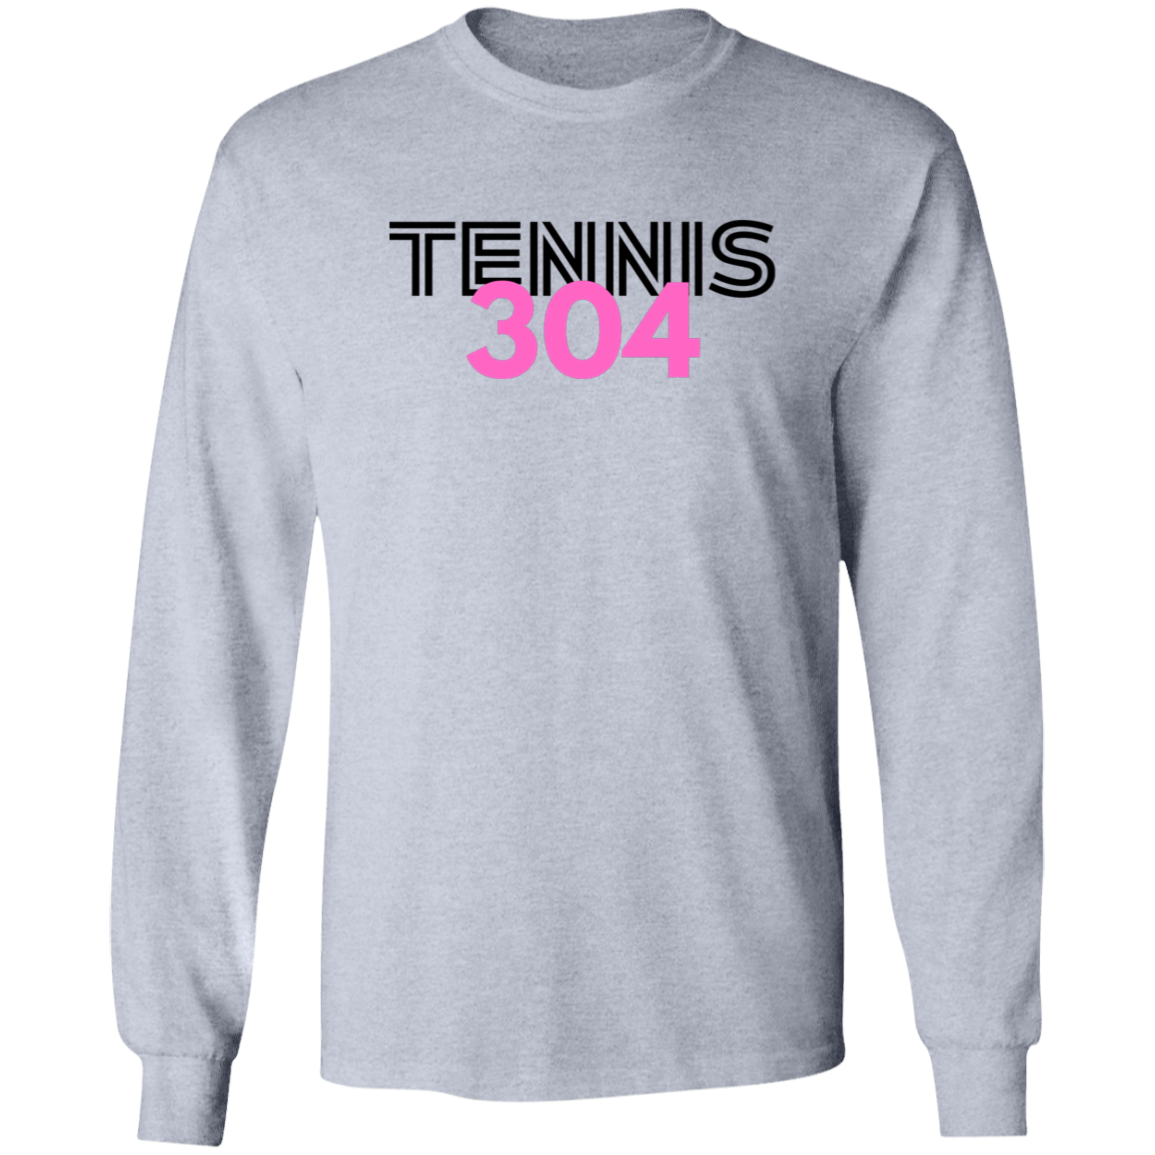 Tennis 304 Ultra Cotton Unisex Tee